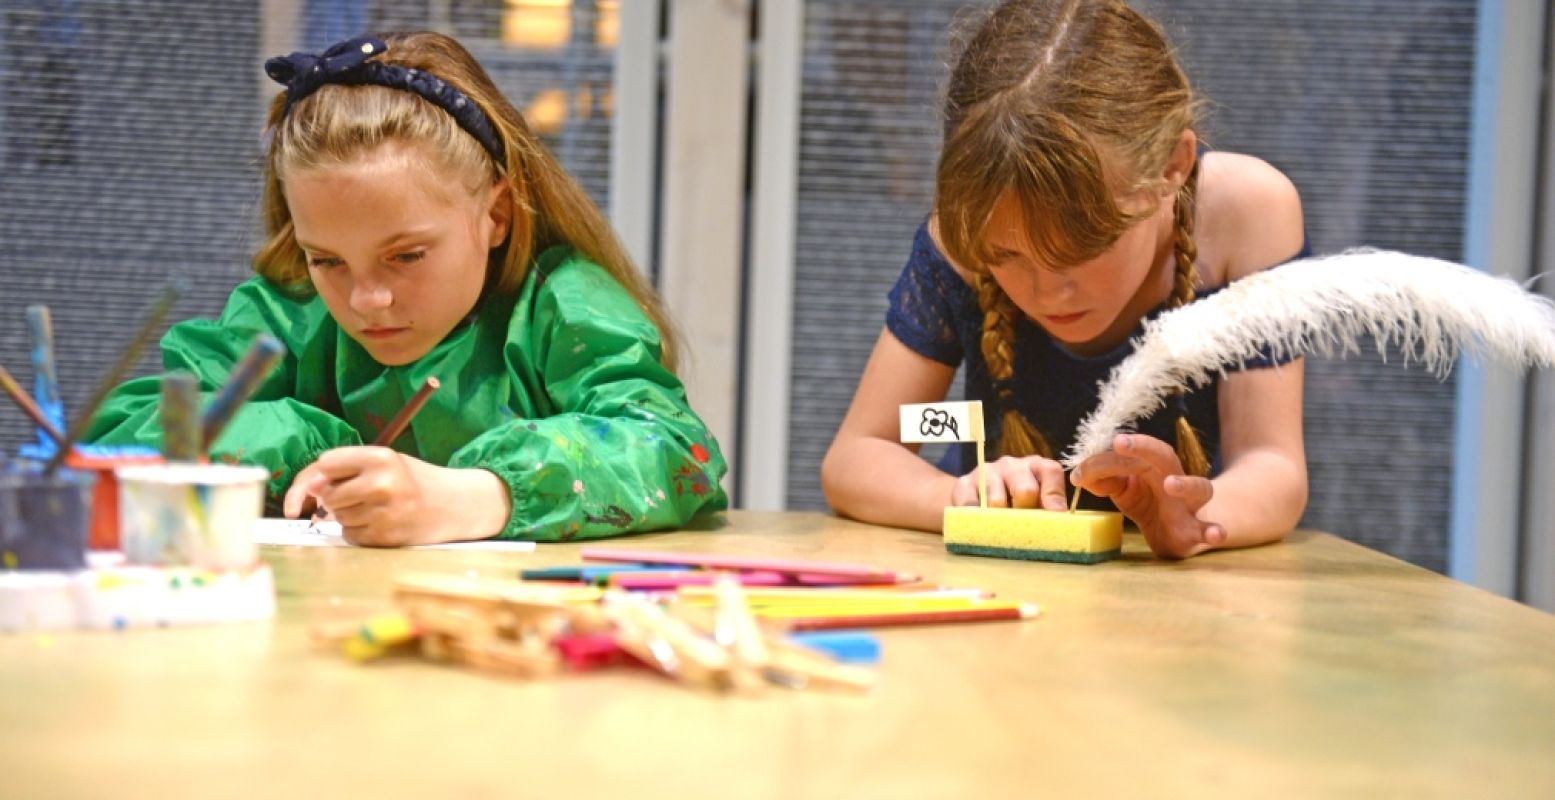 Ontdekken, spelen en knutselen in De Museumfabriek in Enschede. Foto: De Museumfabriek © Anina Romita.